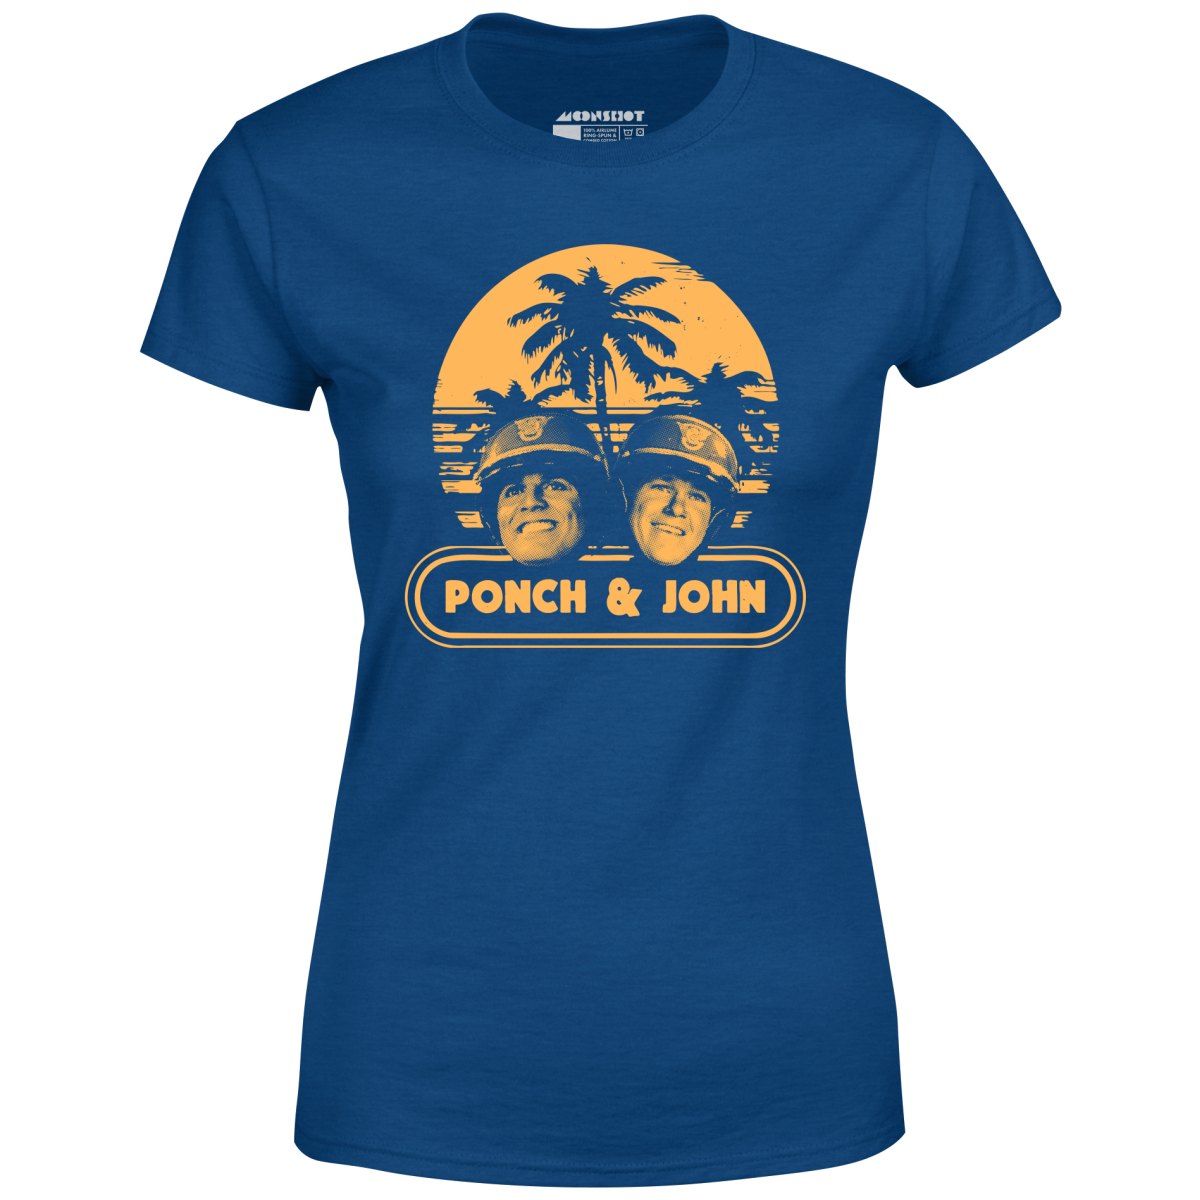 Ponch and John - Women's T-Shirt